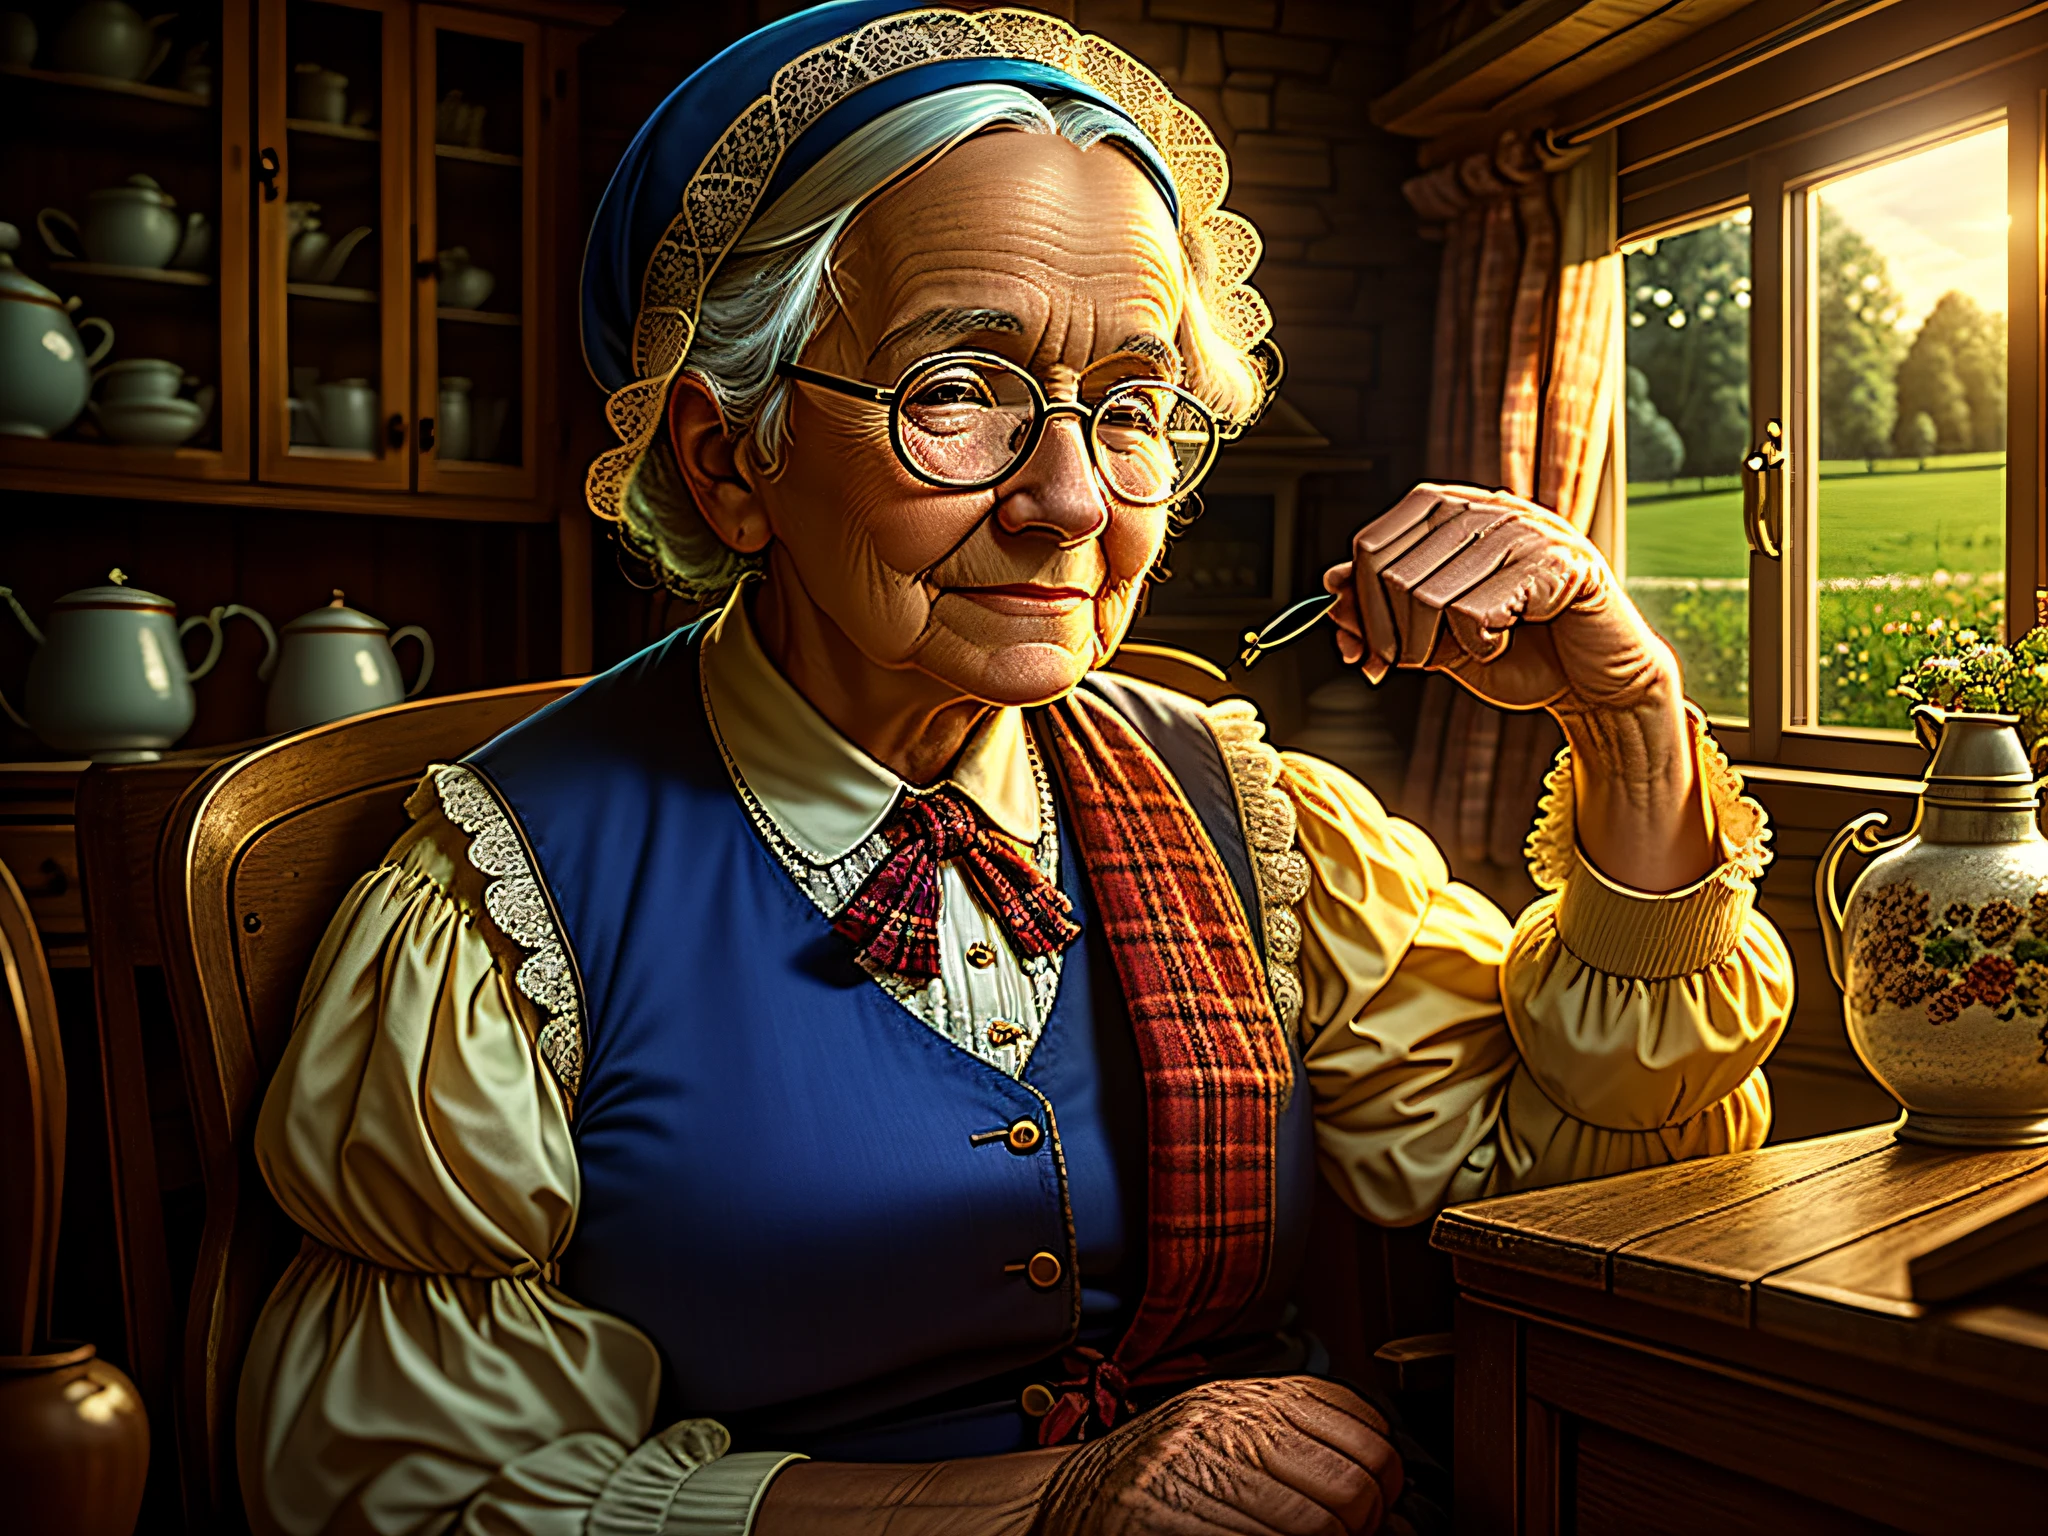 высокое качество, Ностальгическая сцена, детальный загородный дом. Бабушка в очках сидит возле дома, красивая и ласковая мимика высокого качества, Приглушенный свет